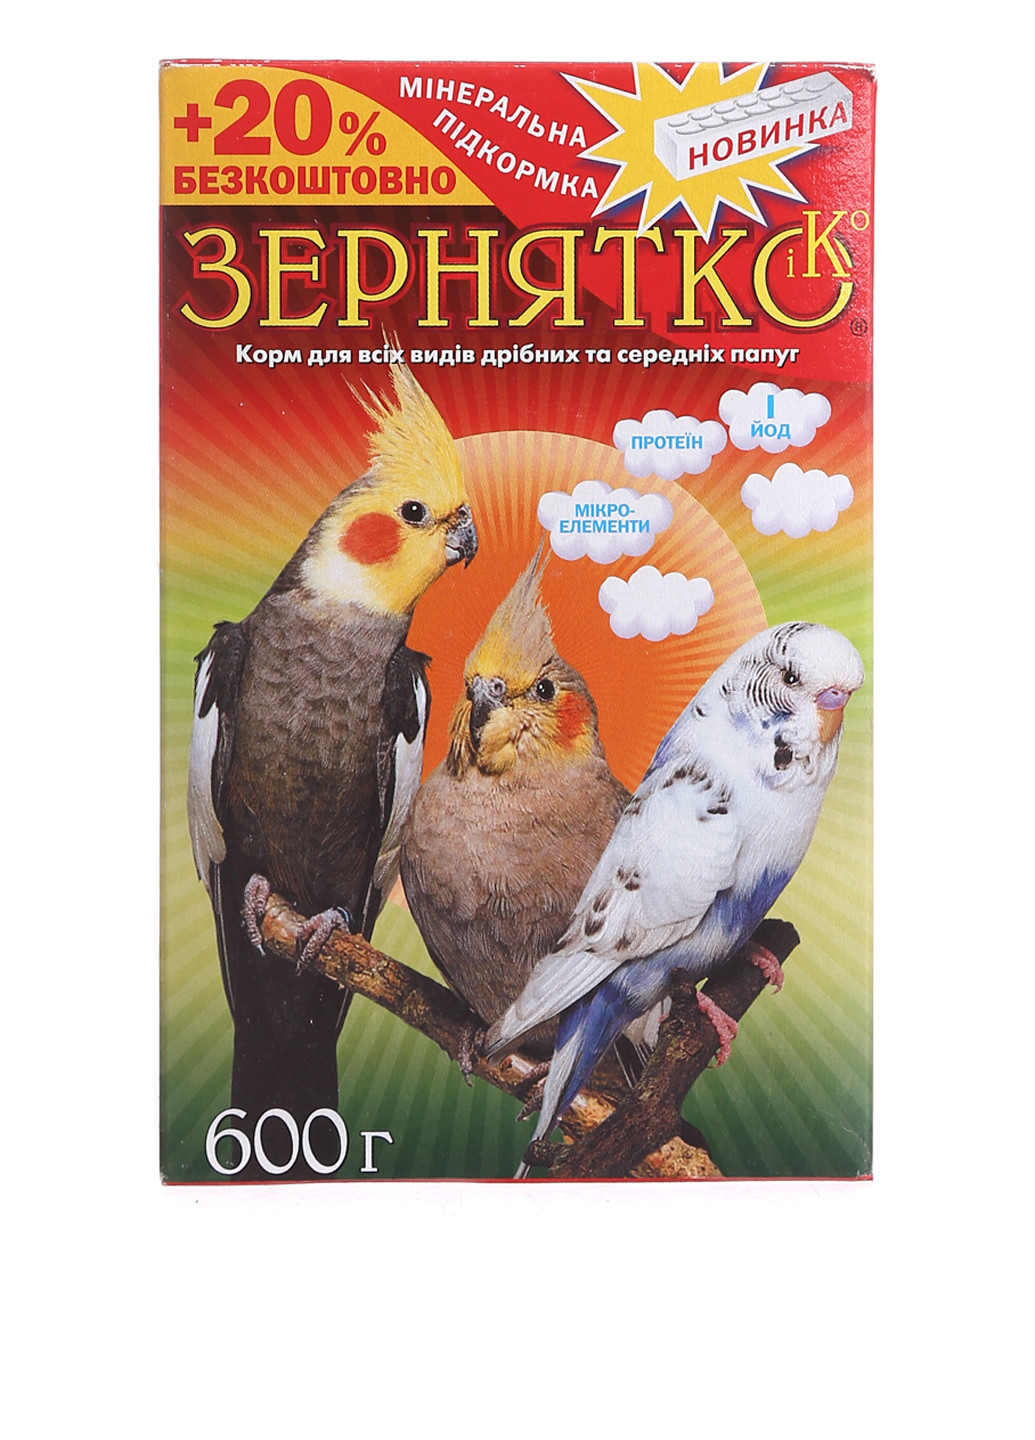 Сухой корм для птиц Три попугая, 600 г Зернятко (78697304)